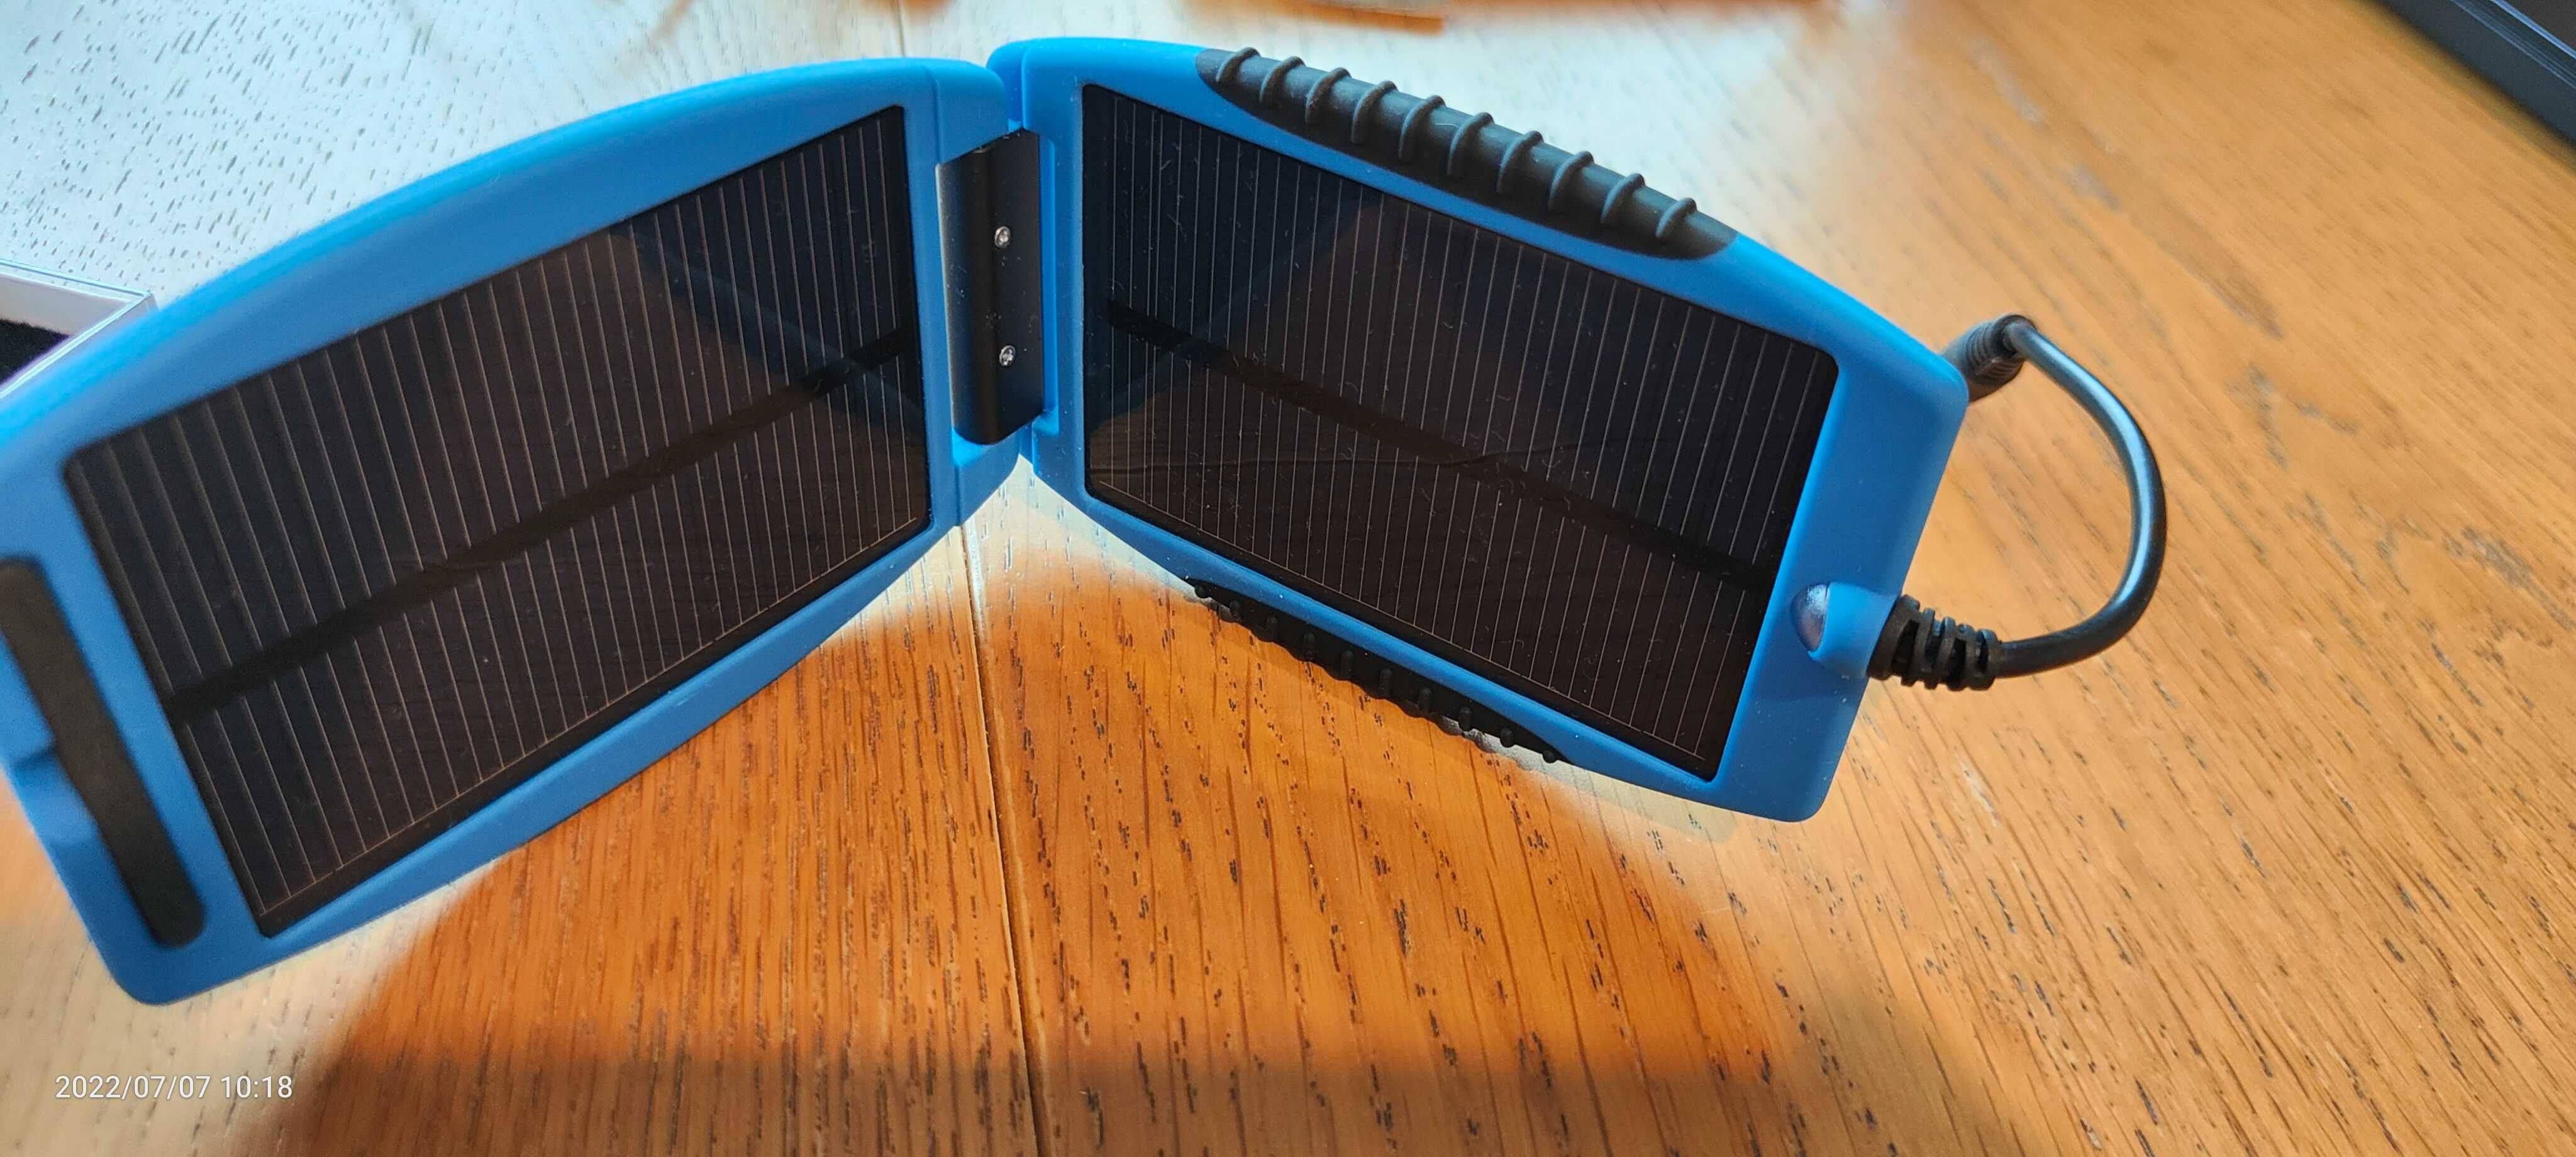 Incarcator solar pentru multiple dispozitive, mouse wireless cadou